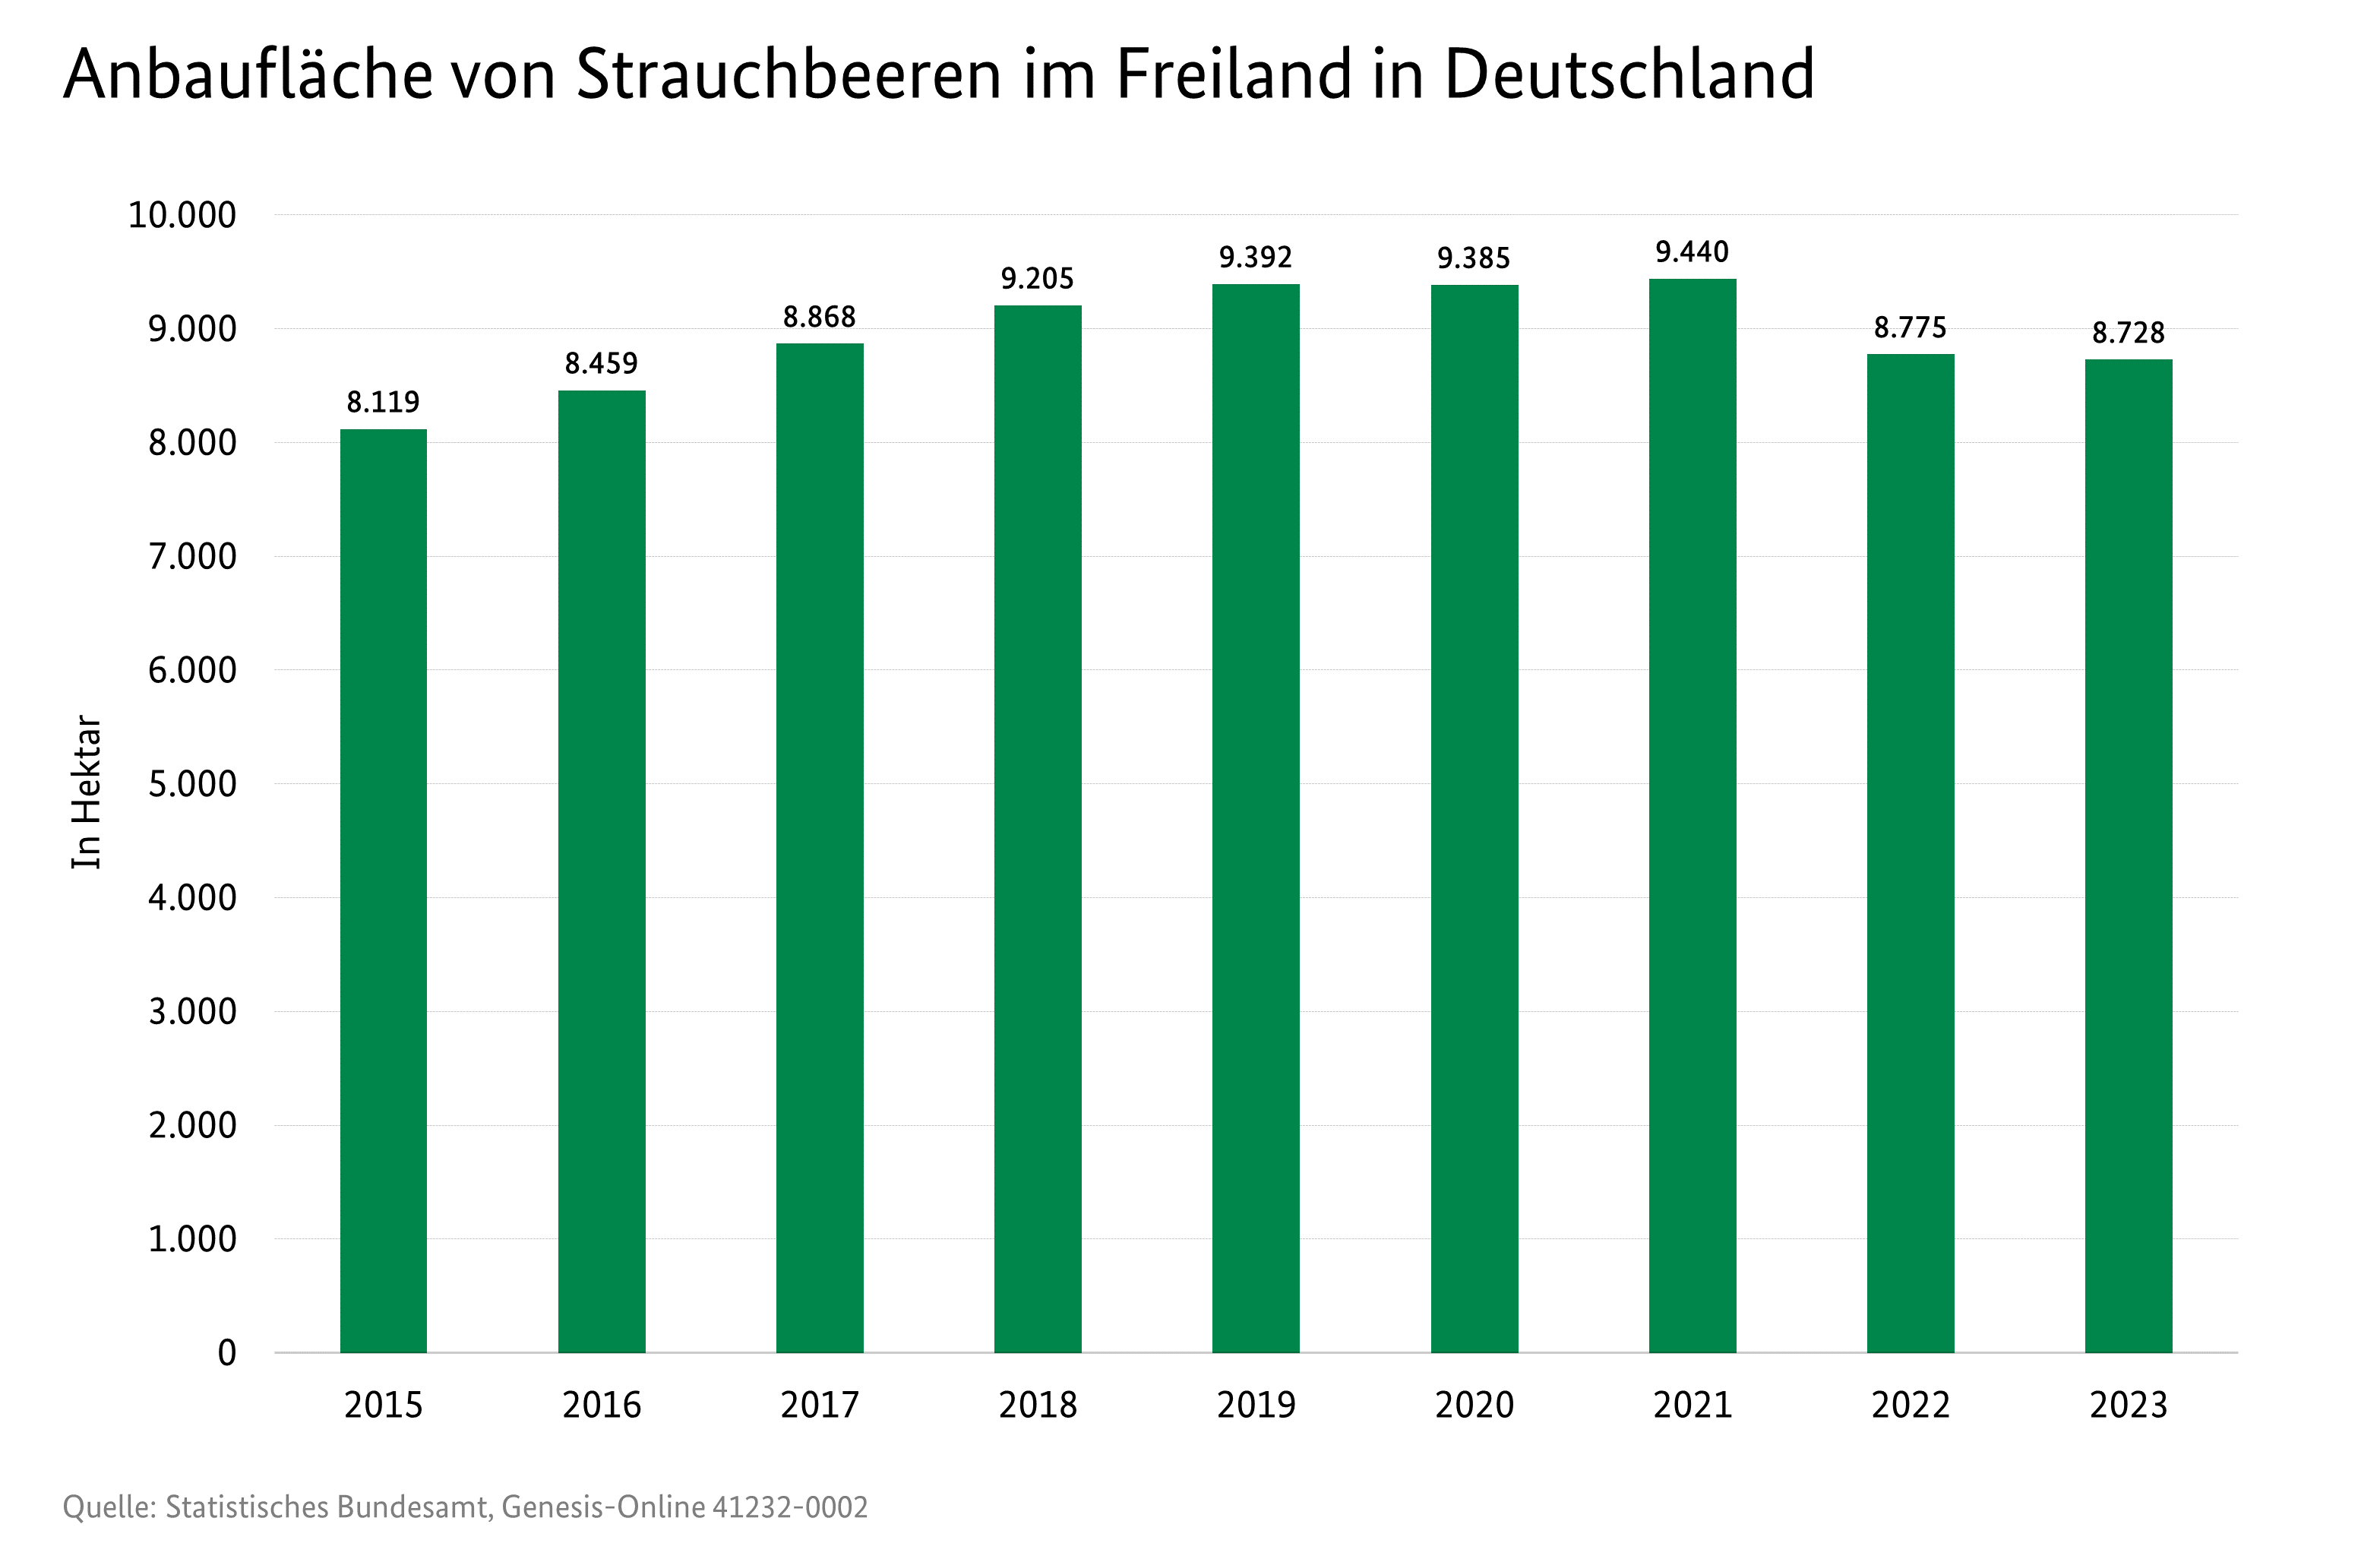 Säulendiagramm: Anbaufläche von Strauchbeeren in Deutschland in Hektar. 